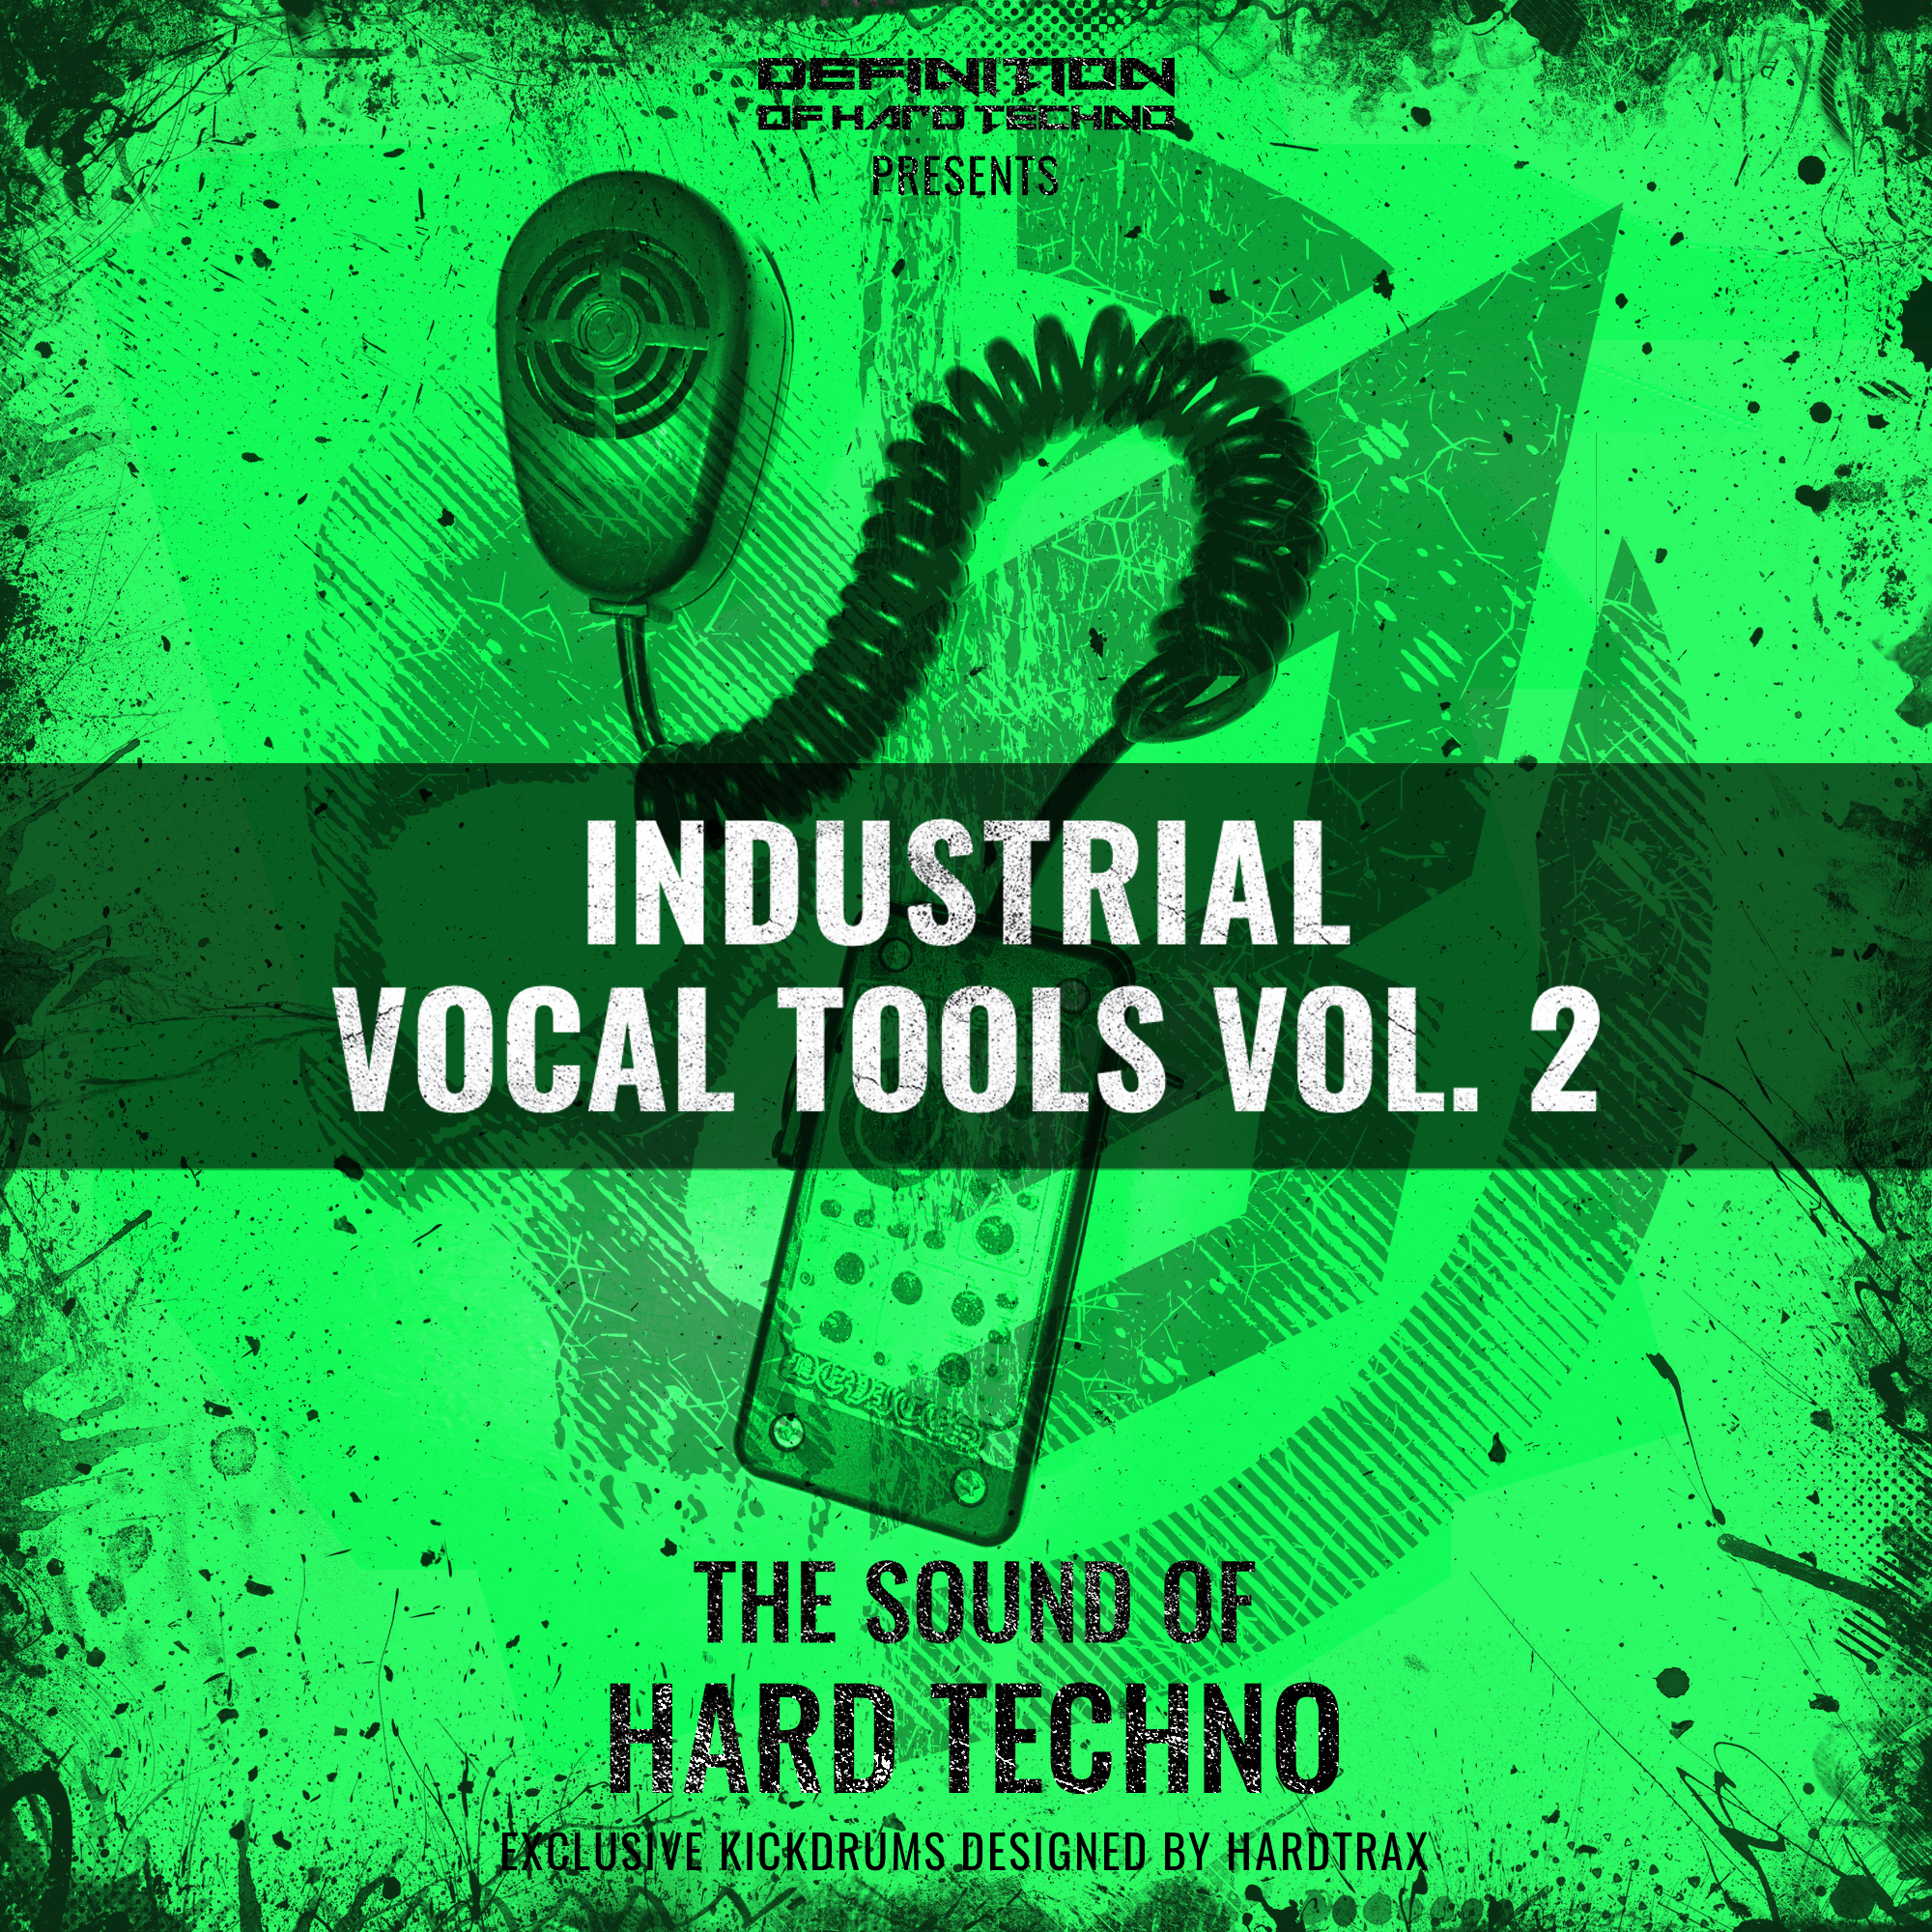 DOHT - Industrial Vocal Tools Vol. 2